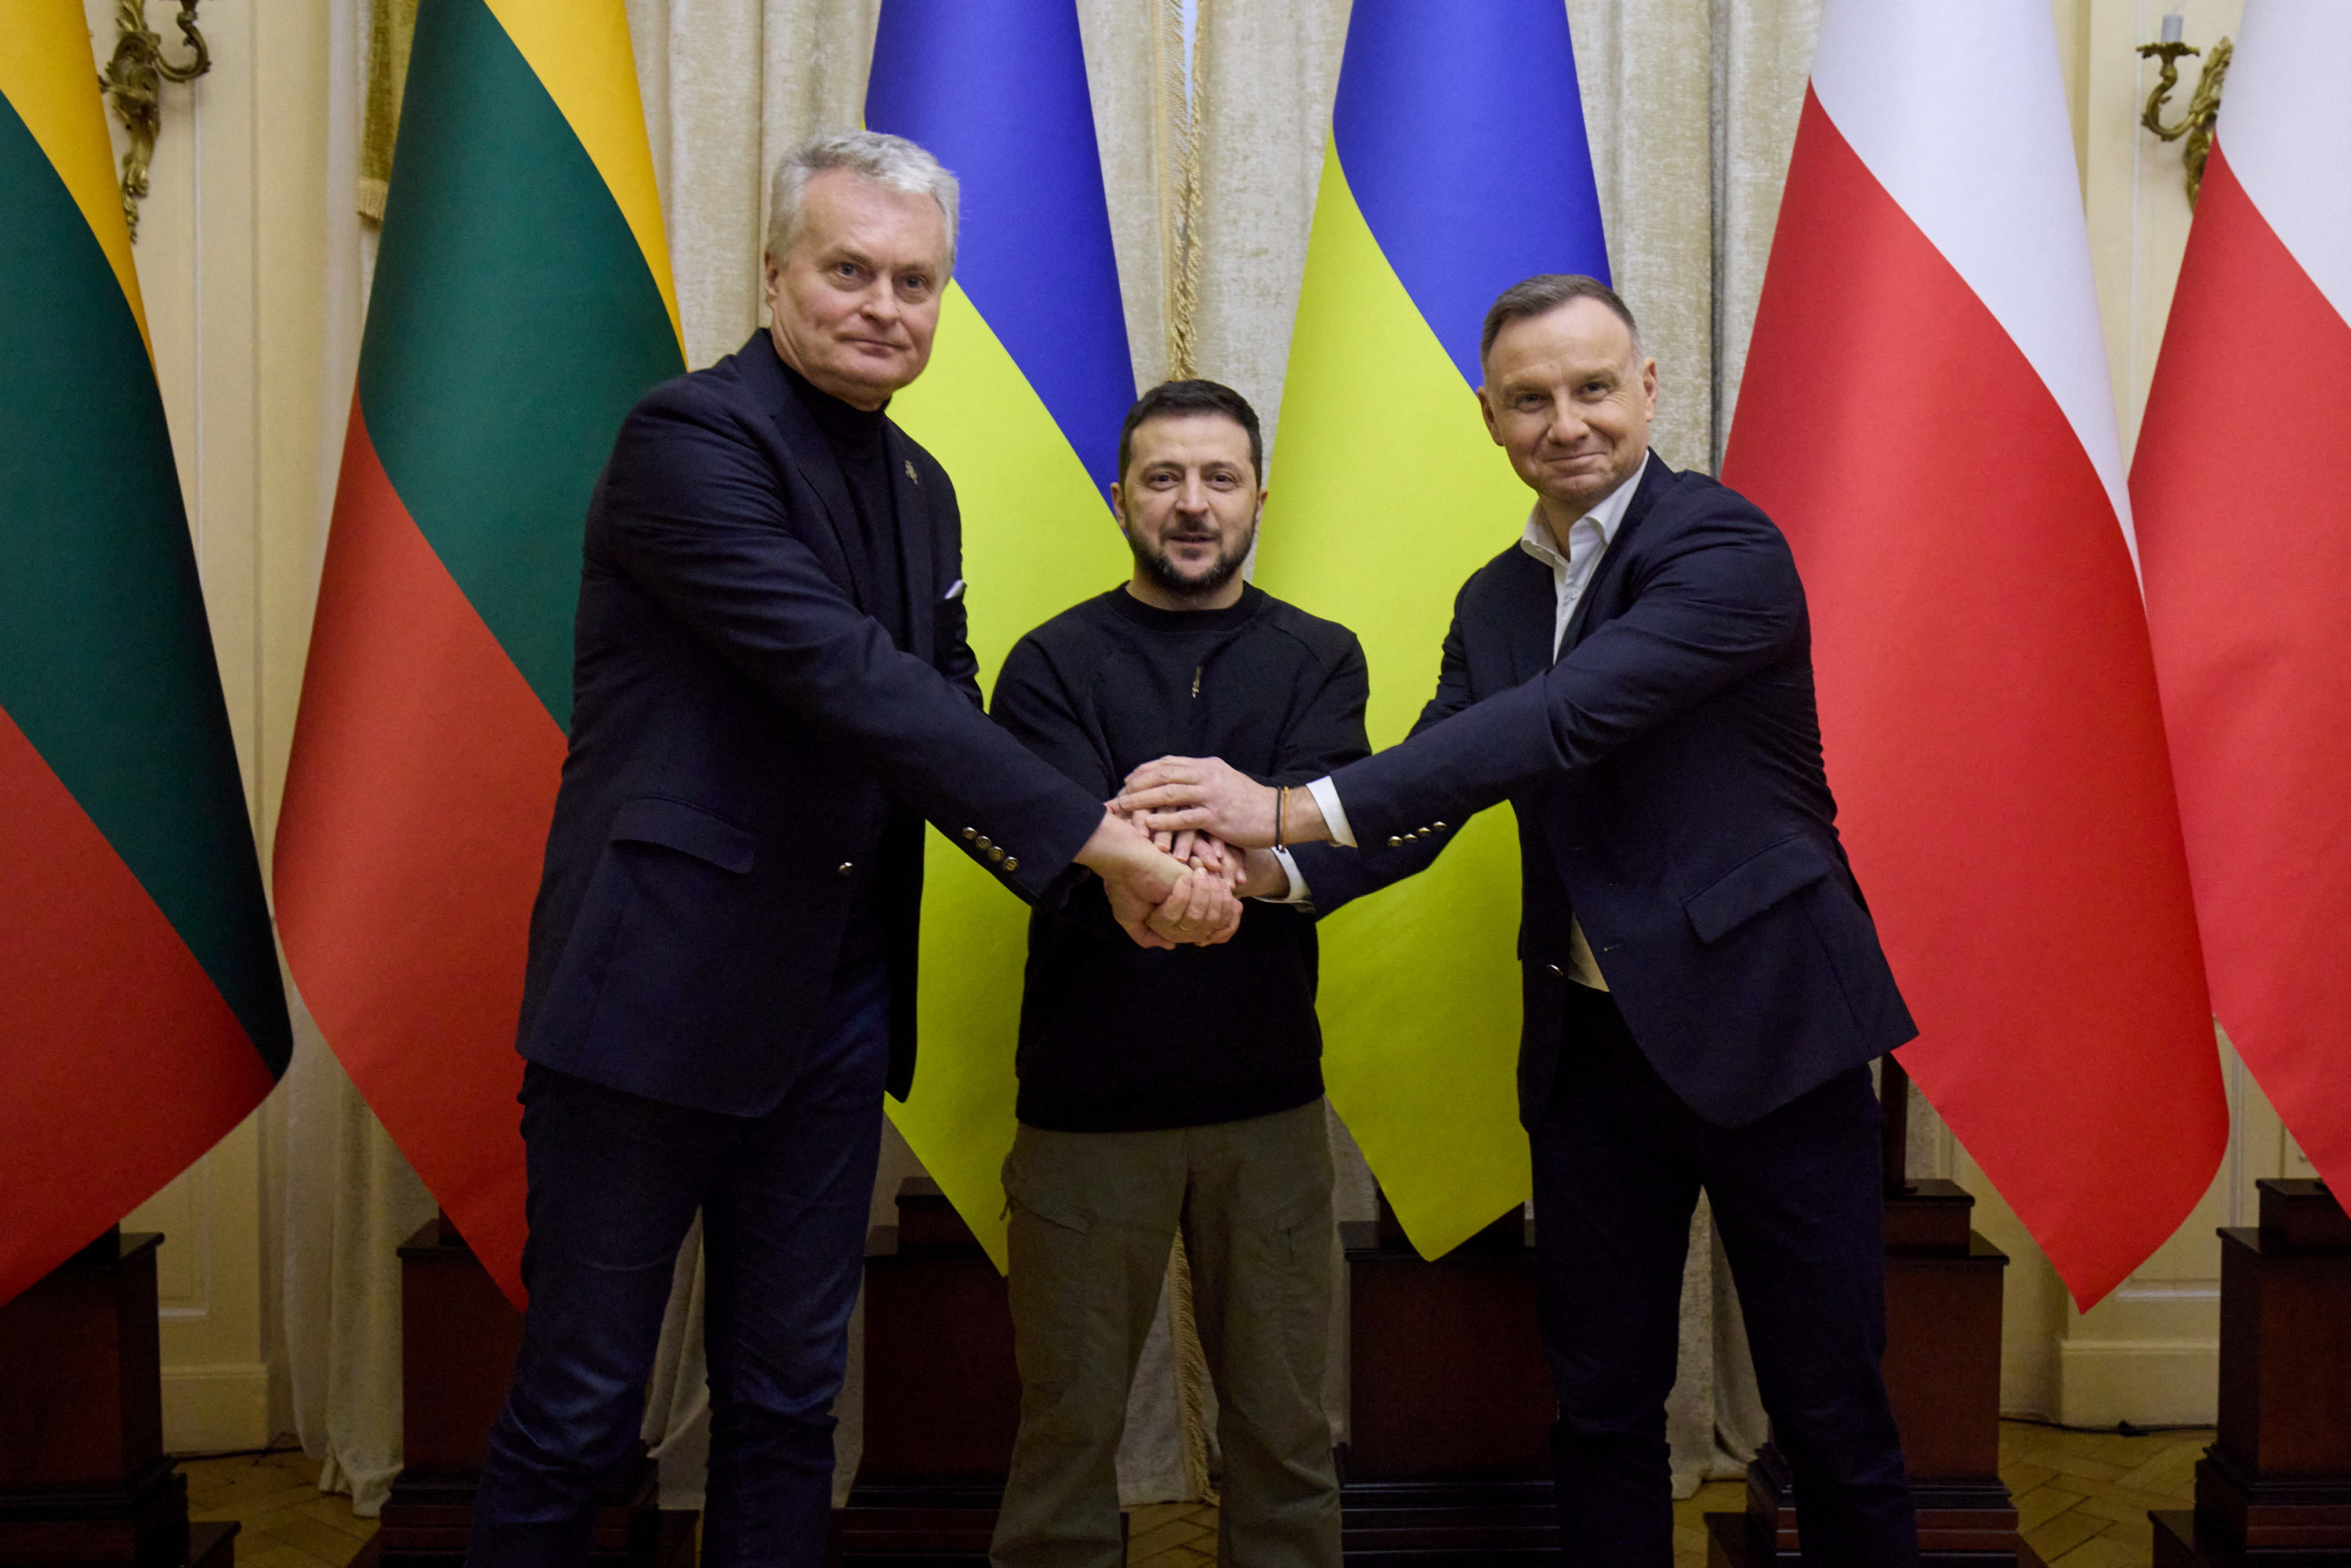 Ukraine's President Volodymyr Zelenskiy, Poland's President Duda and Lithuanian President Nauseda shake hands meeting in Lviv